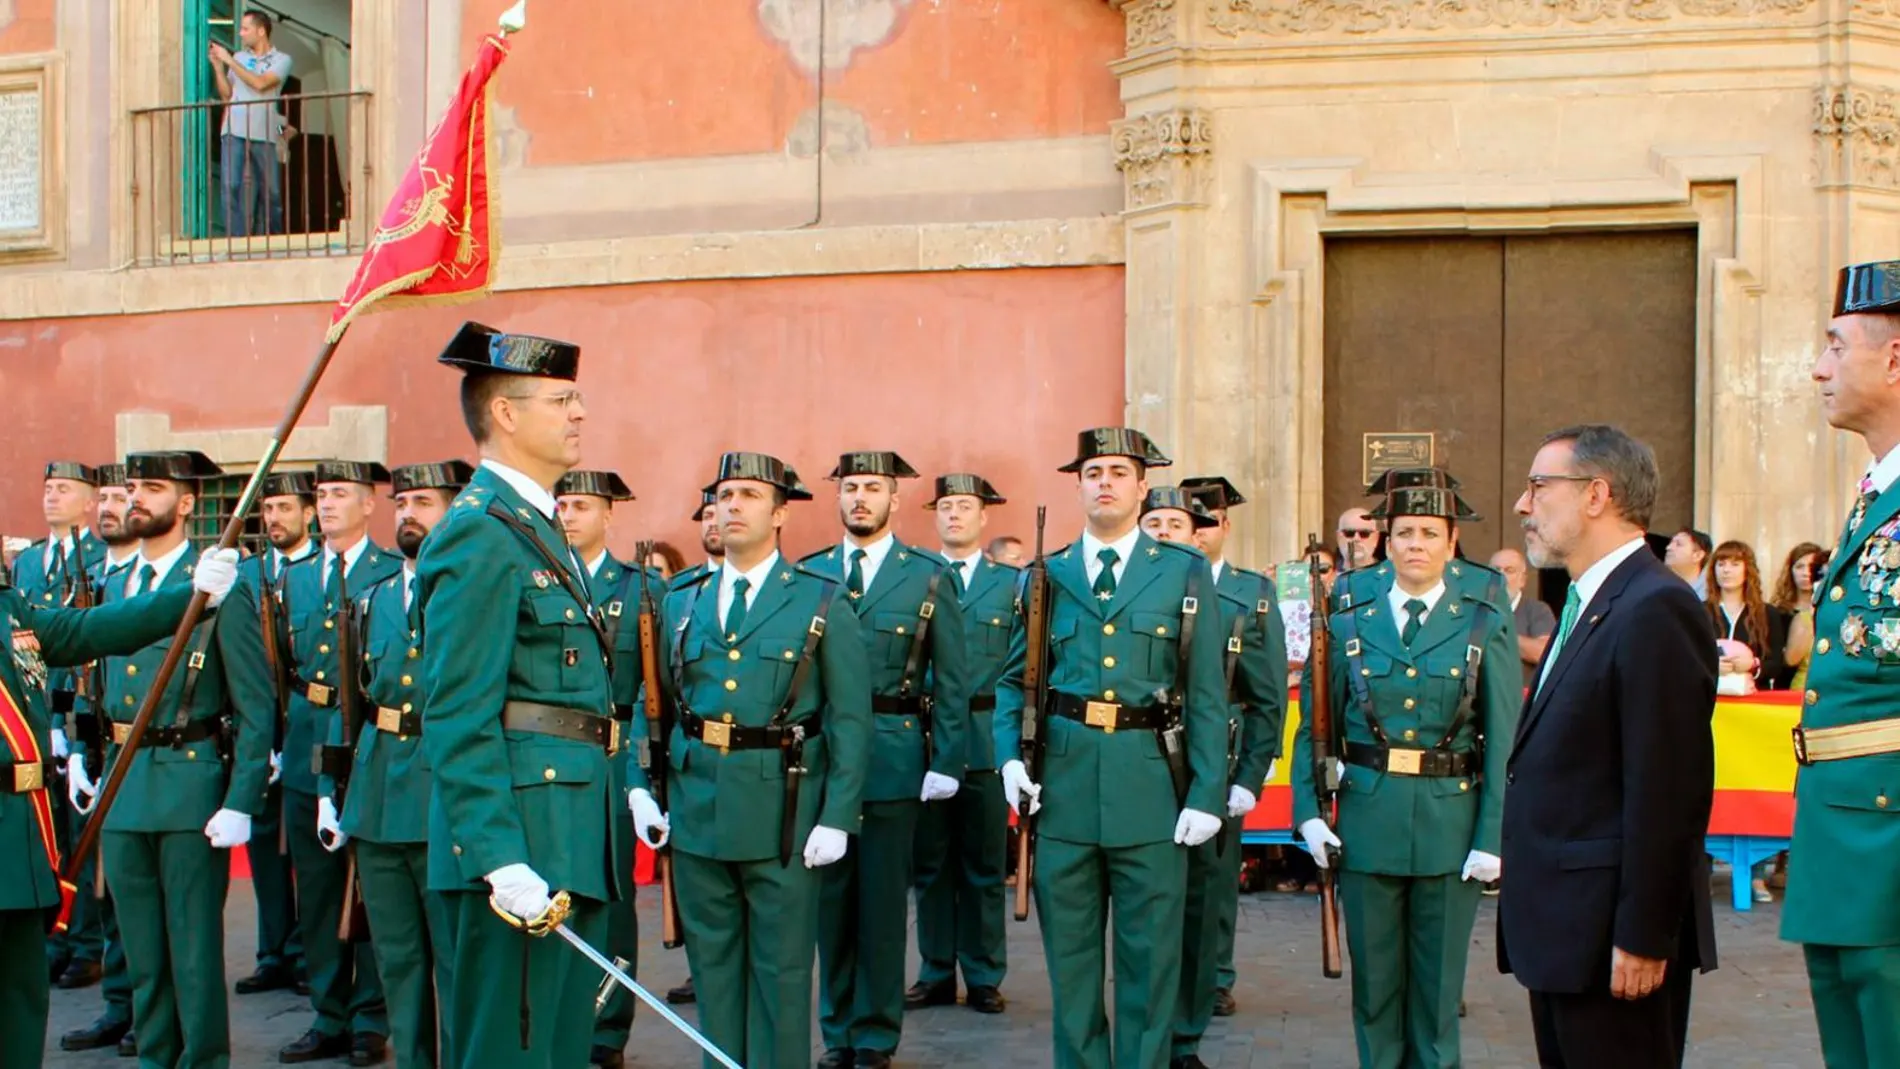 Los agentes de la Guardia Civil celebran el Día de su Patrona y desfilan en la Plaza Belluga de Murcia frente a la catedral